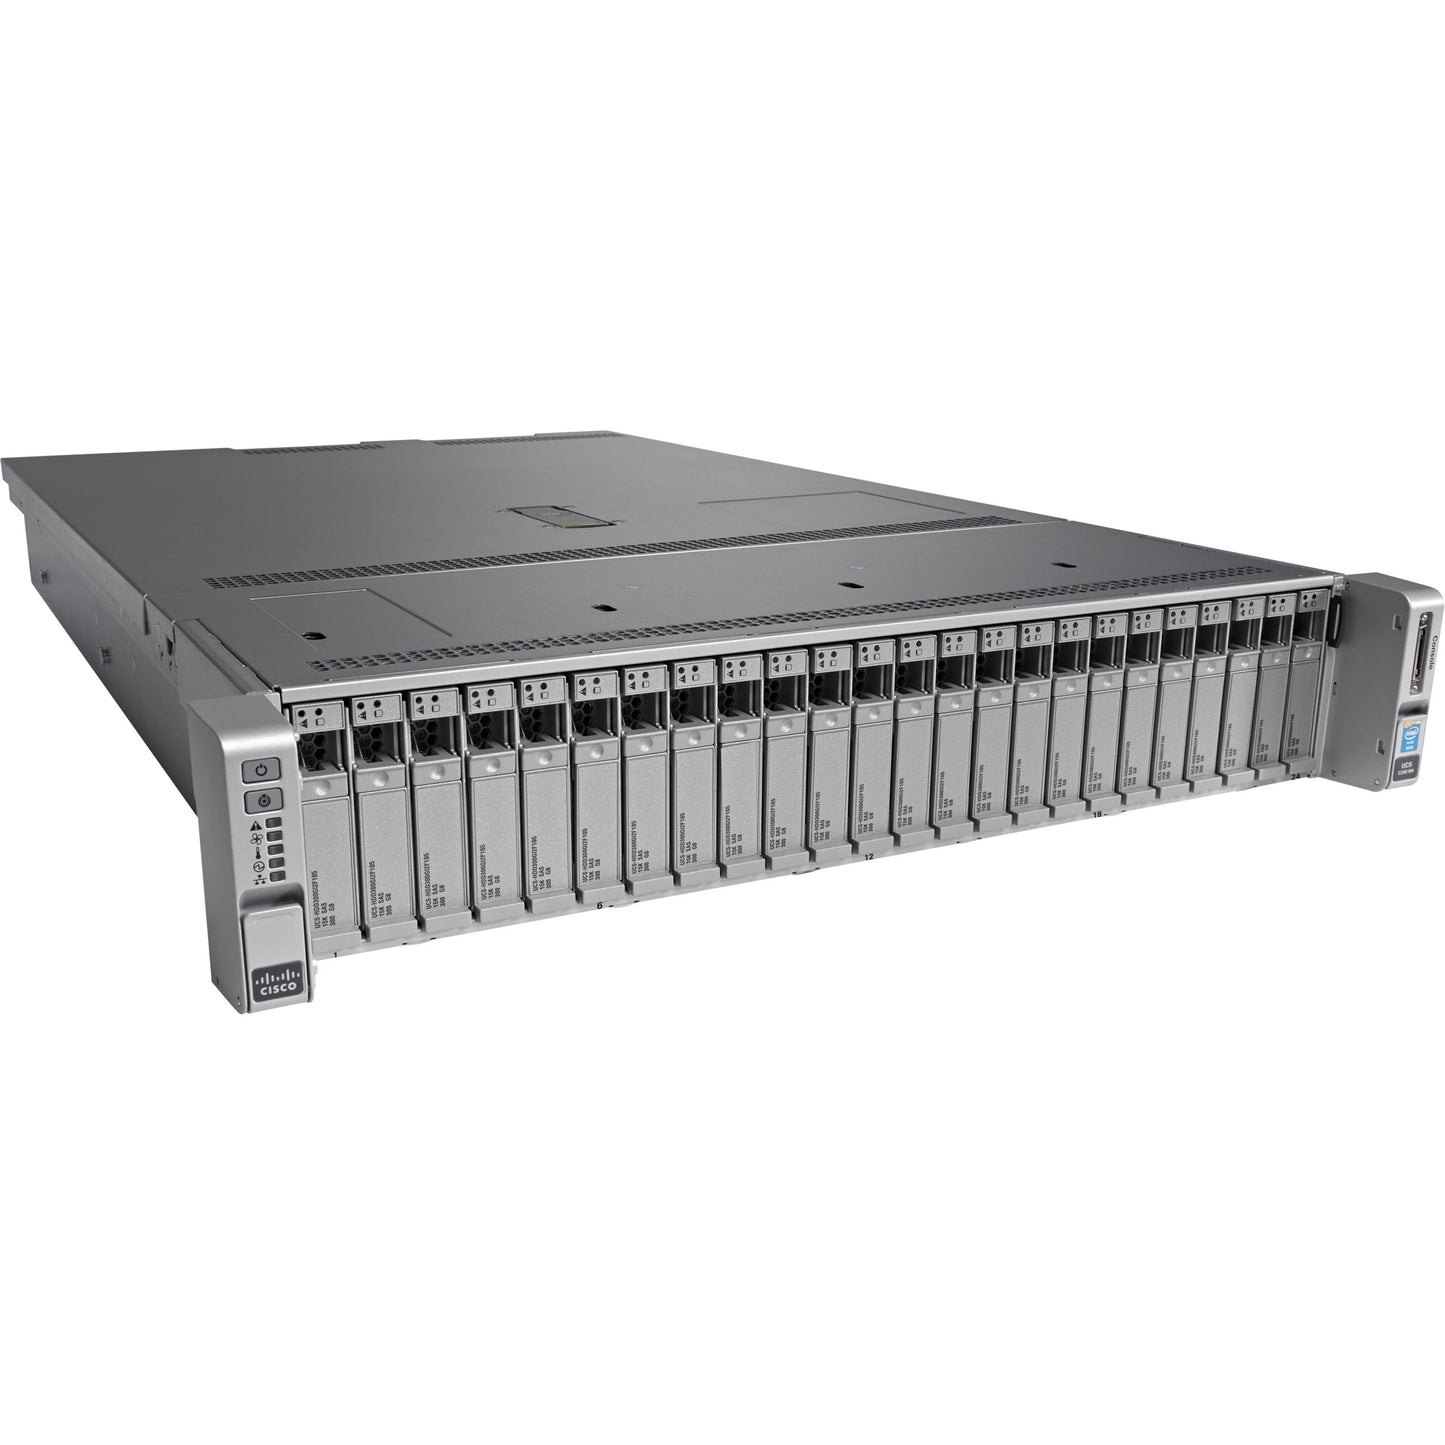 Cisco C240 M4 2U Rack Server - 2 x Intel Xeon E5-2650 v3 2.30 GHz - 128 GB RAM - 12Gb/s SAS Serial ATA Controller